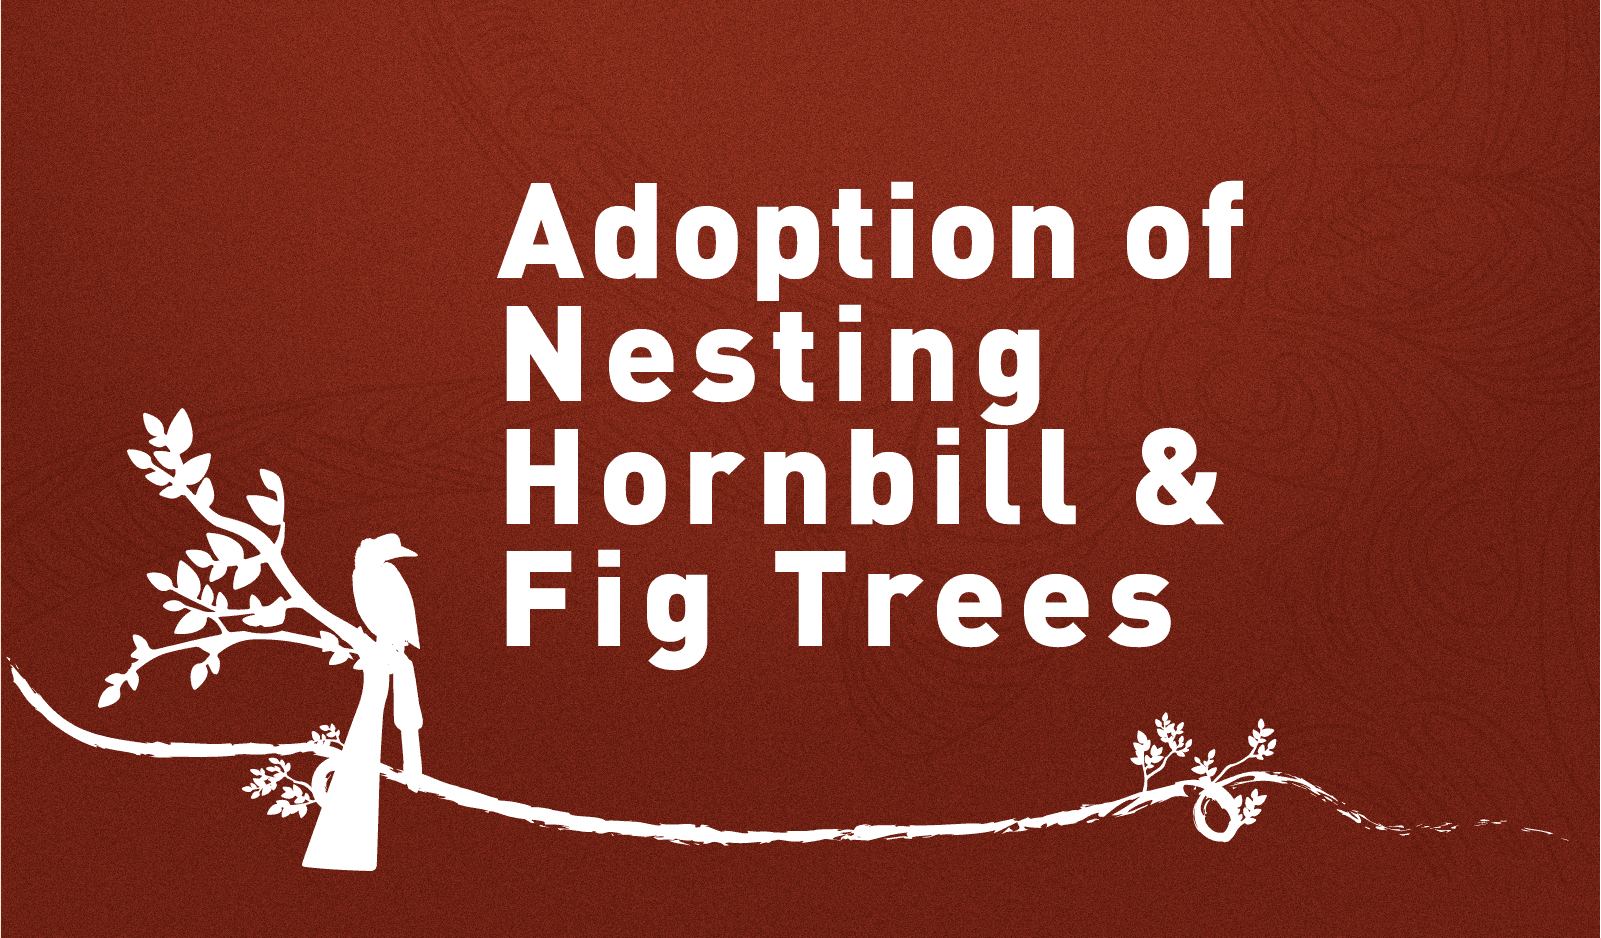 FAQ Adoption of Nesting Hornbill & Fig Trees